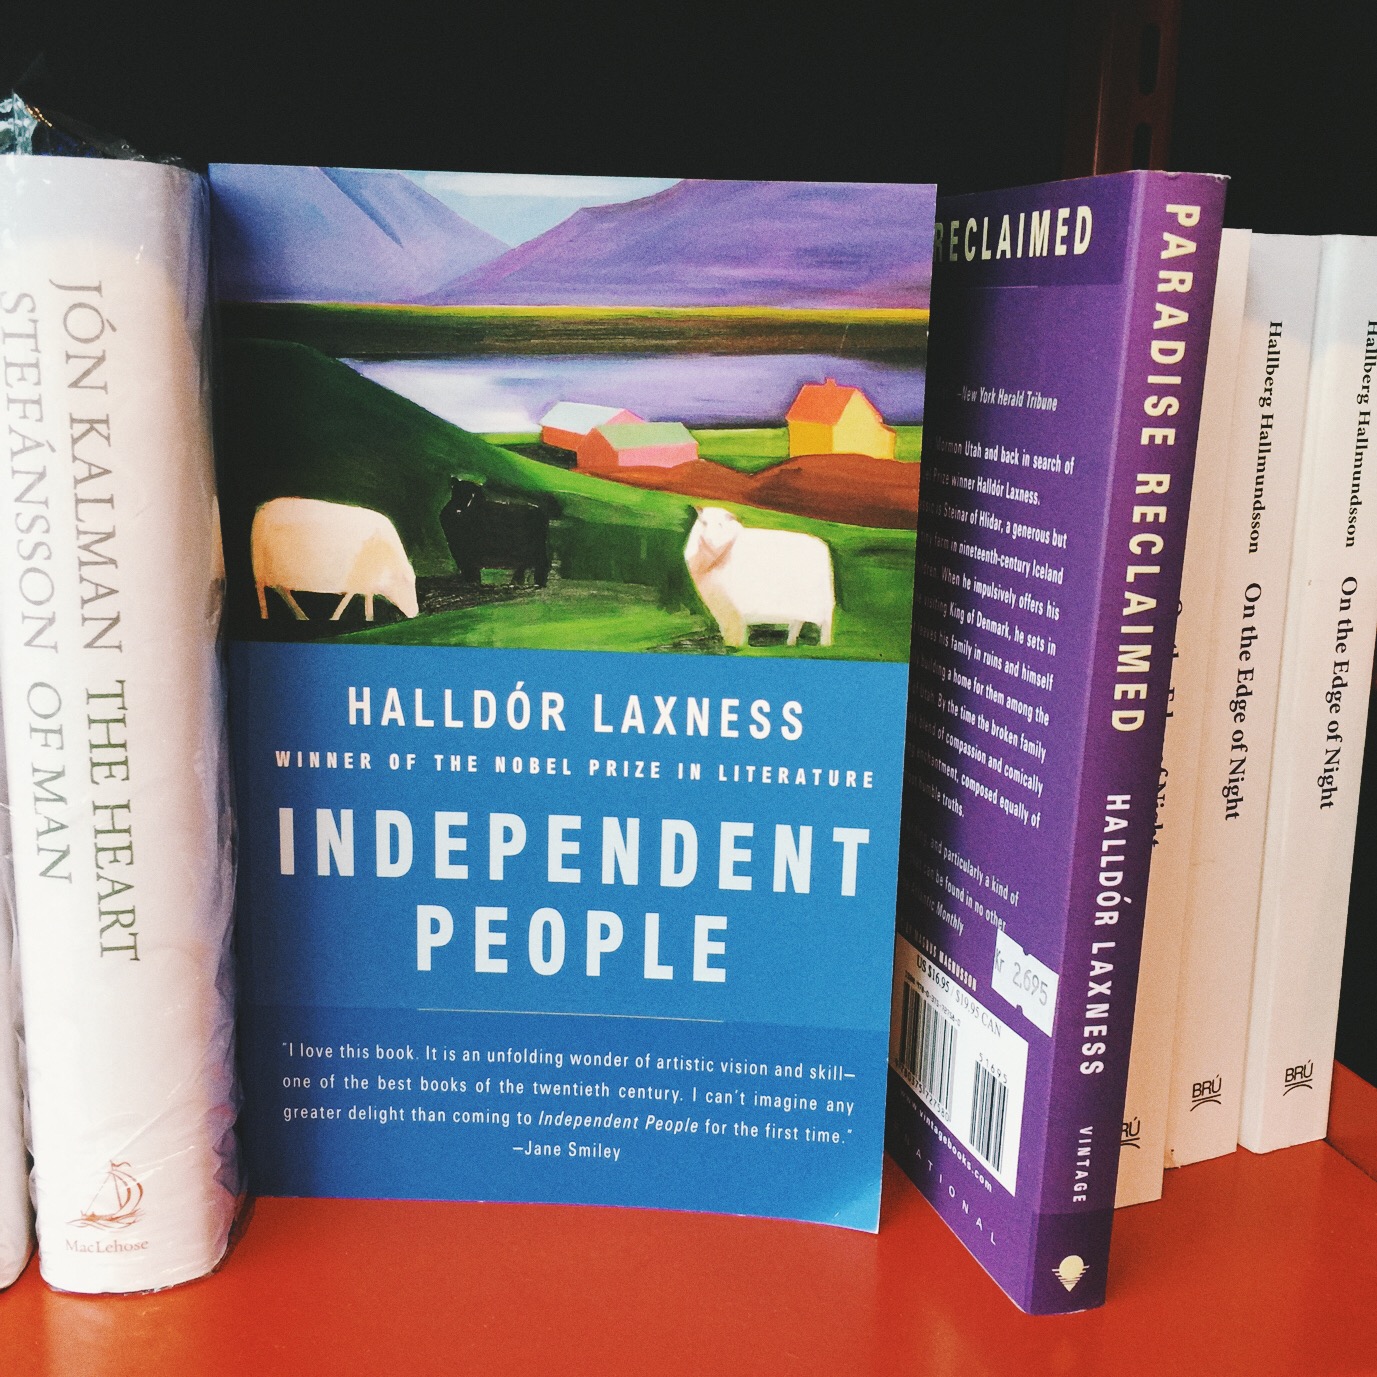 Independent People, de Halldór Laxness, es el libro más importante de la literatura islandesa en el s. XX